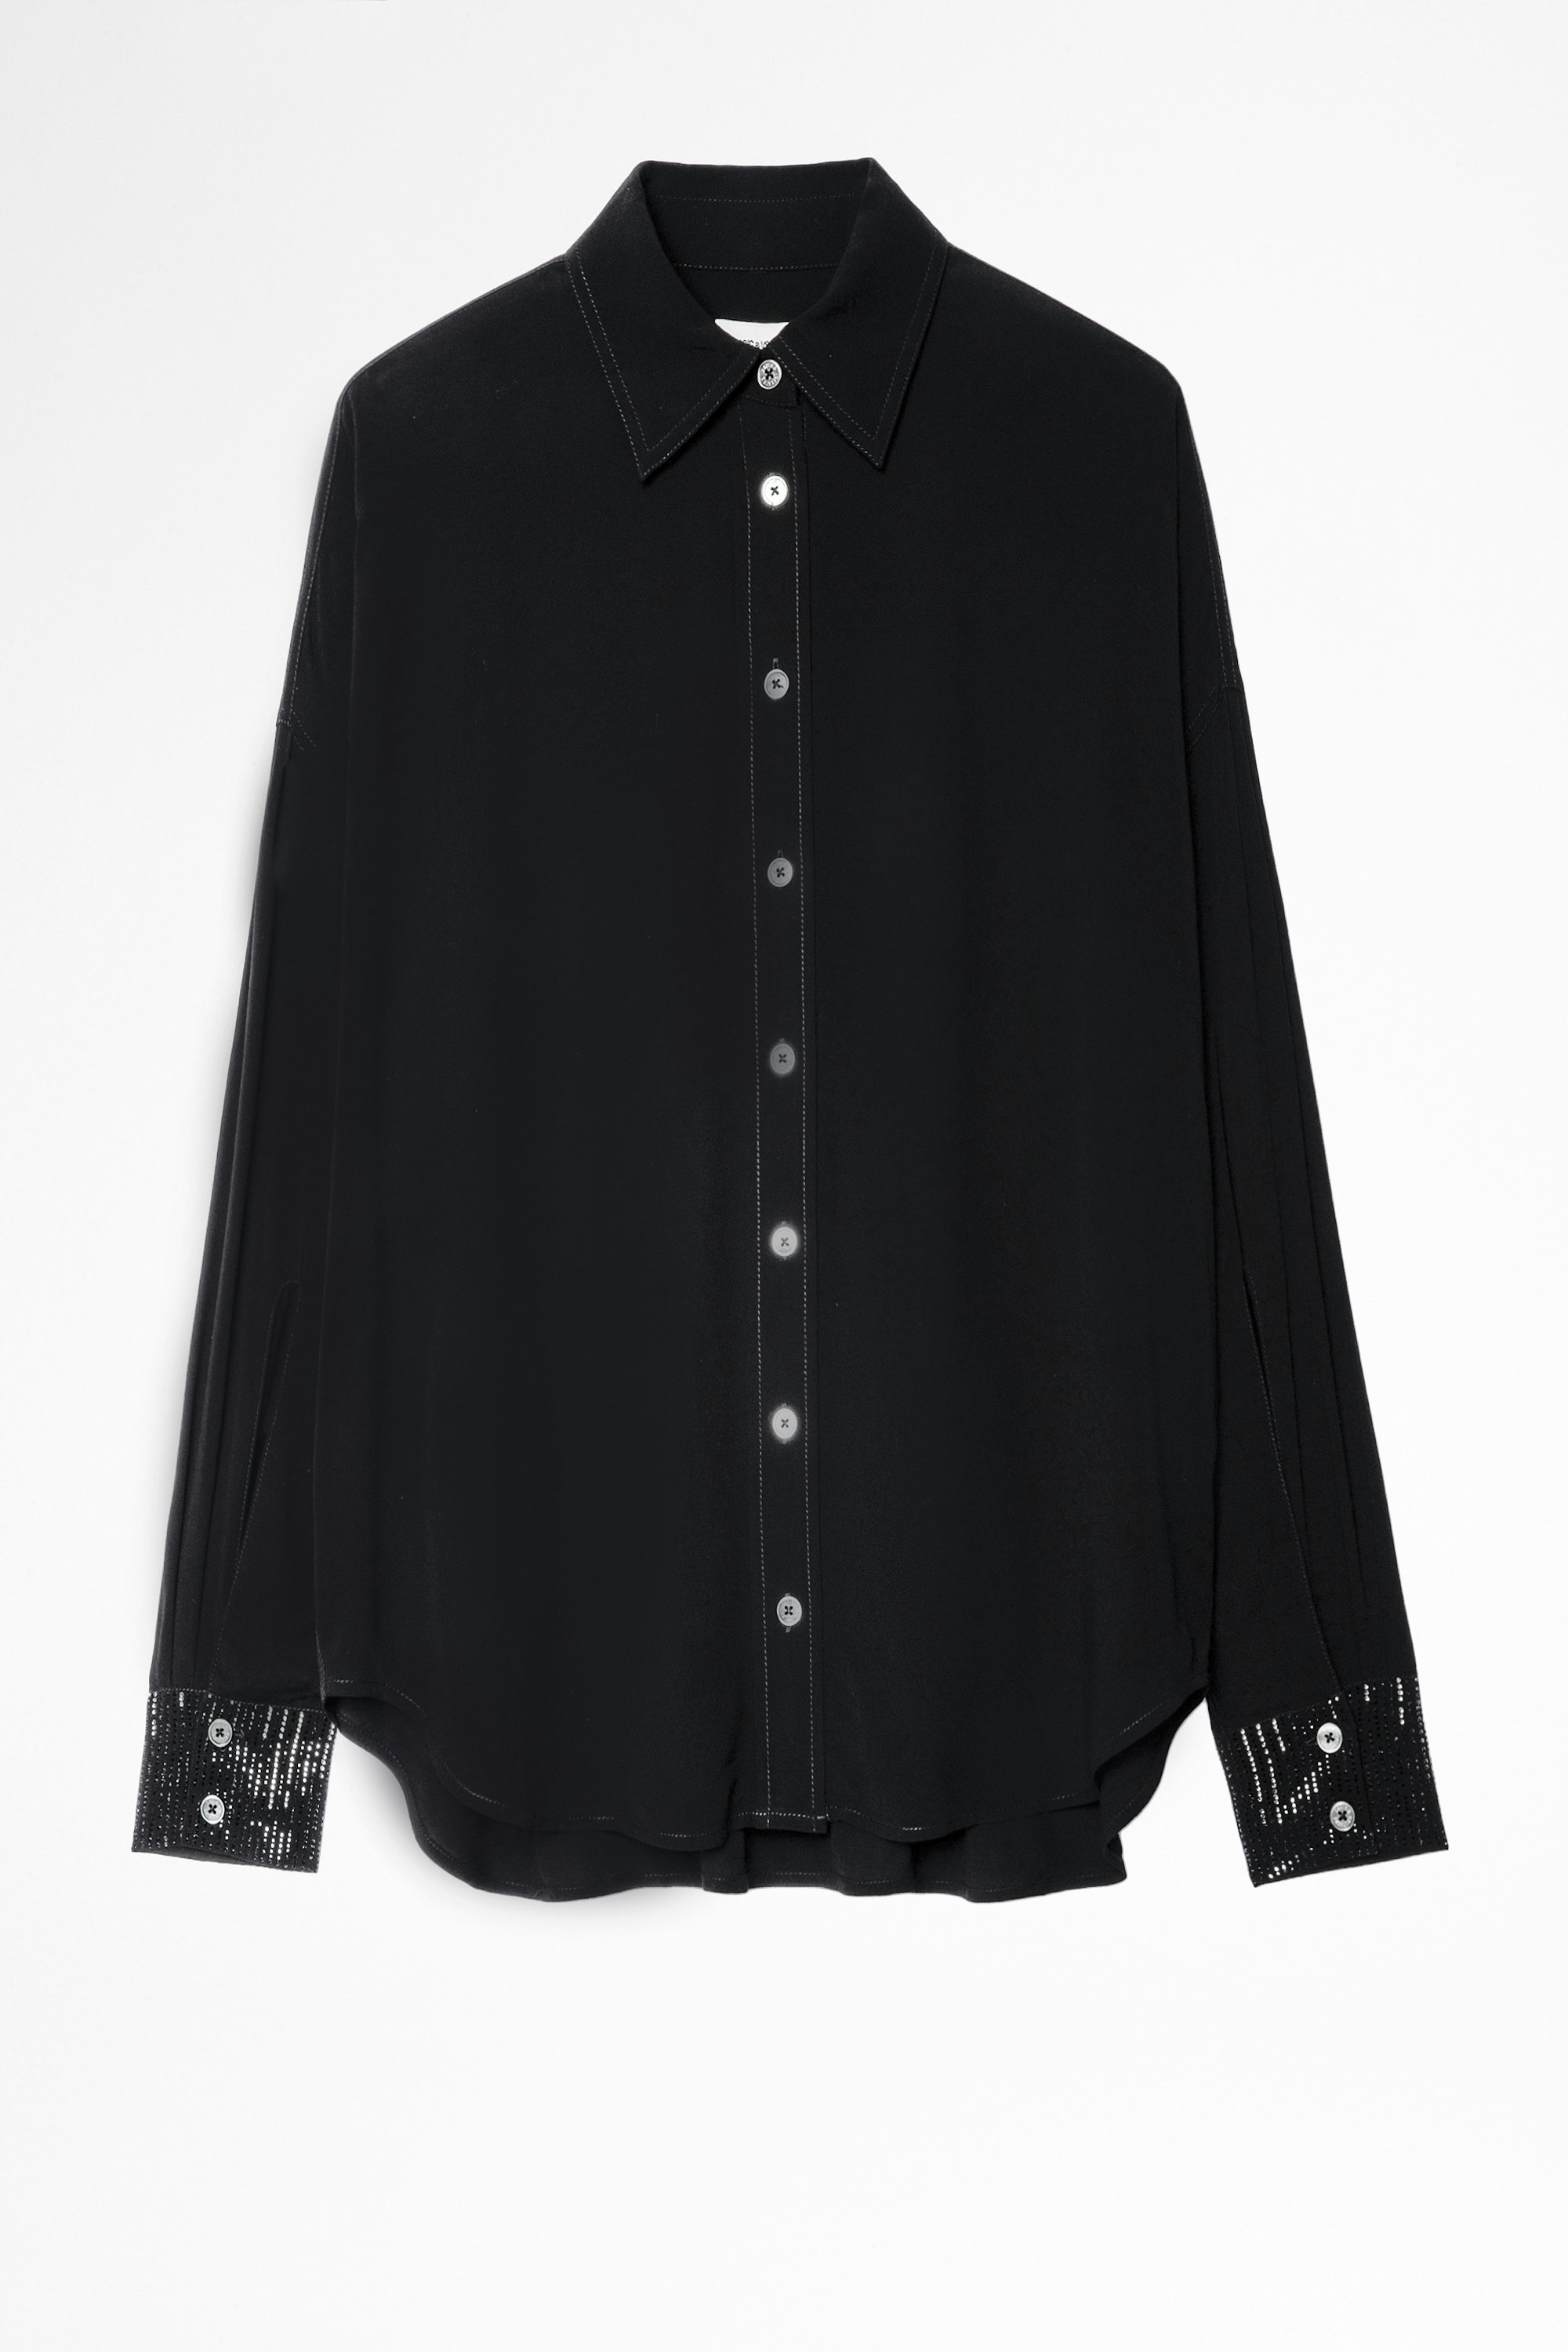 Camisa Tamara Strass Camisa negra de mujer con detalle de strass en los puños. Confeccionado con fibras procedentes de bosques de gestión sostenible.